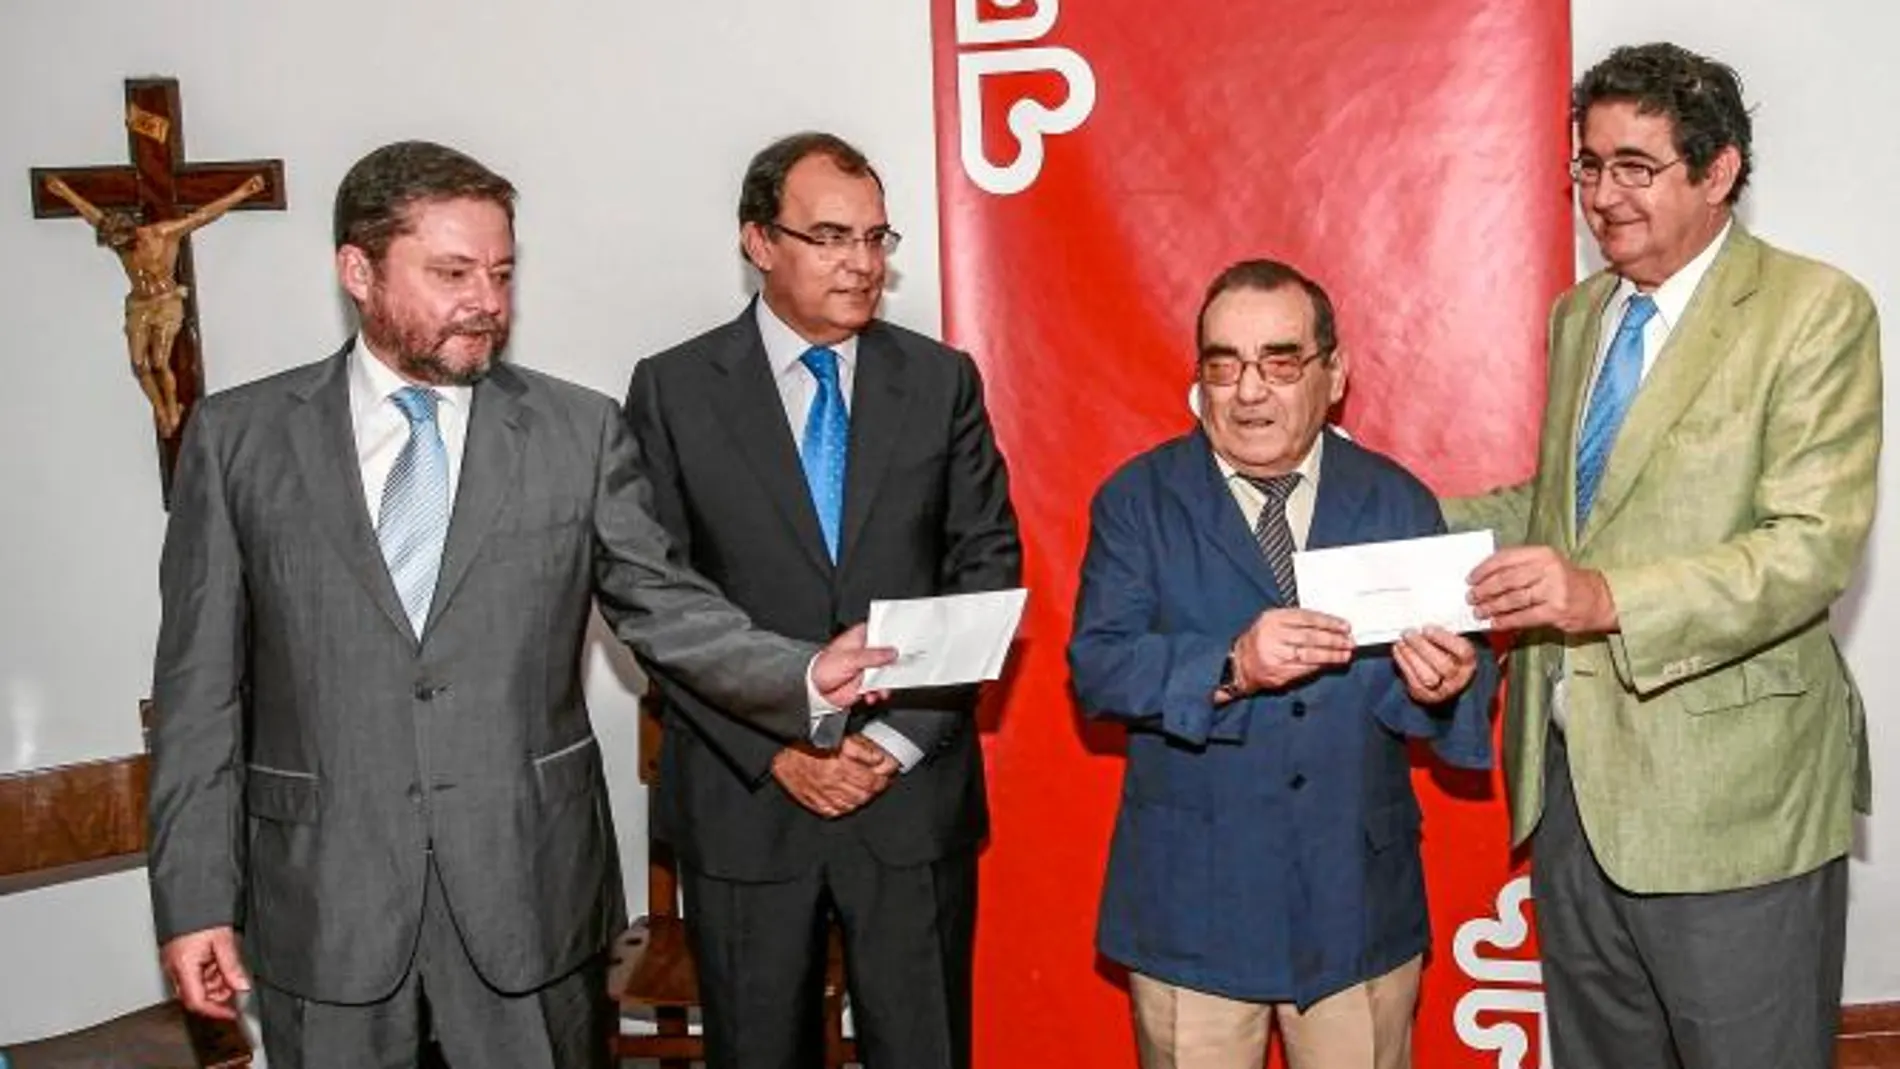 El Colegio de Abogados de Sevilla, a través de la iniciativa «Euro solidario colegial», entregó ayer a Cáritas Diocesana 8.000 euros en concepto del primer pago mensual conjunto